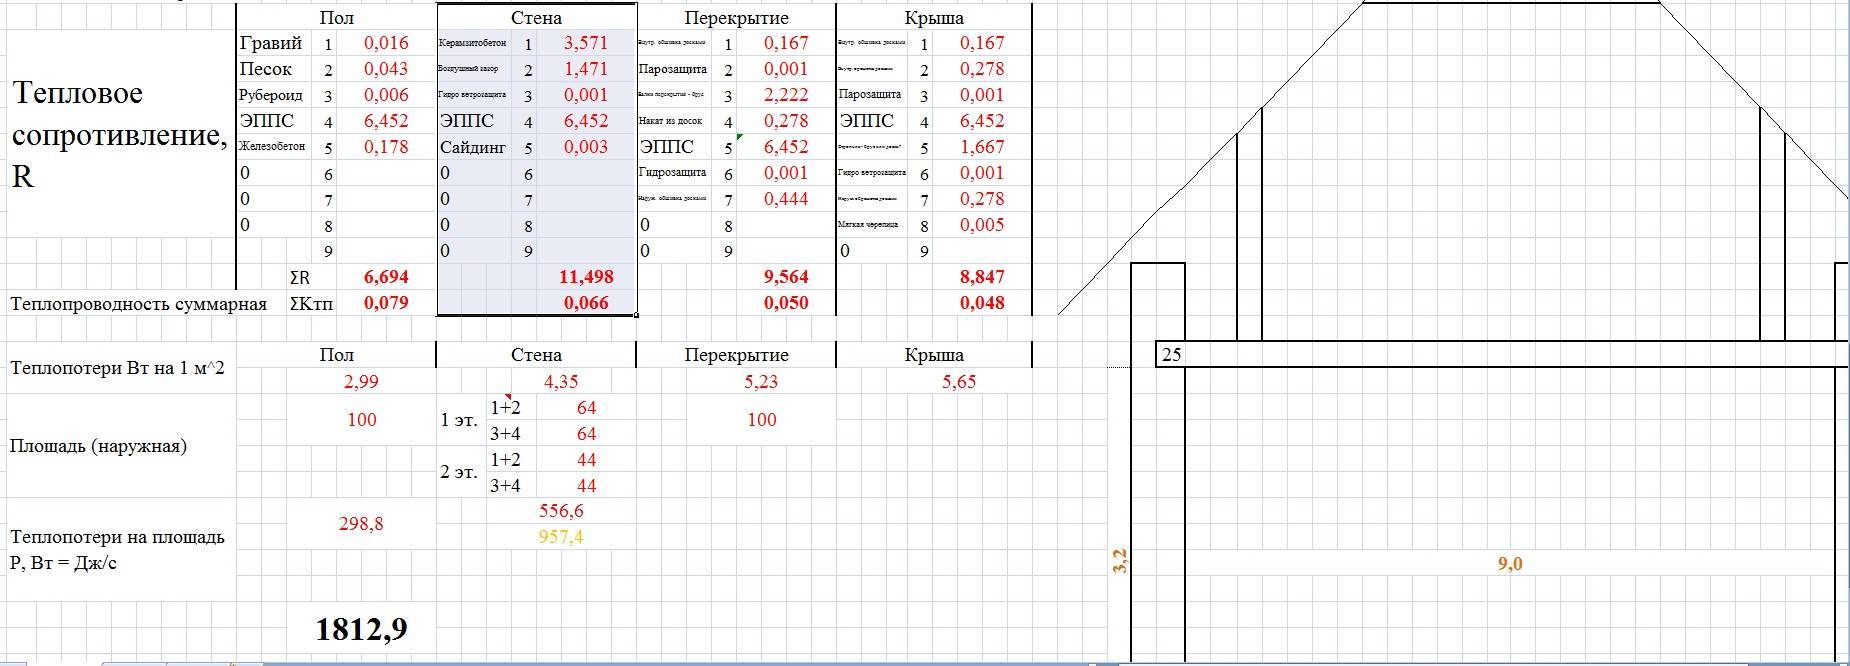 Онлайн калькулятор односкатной крыши, обрешетки и стропильной системы